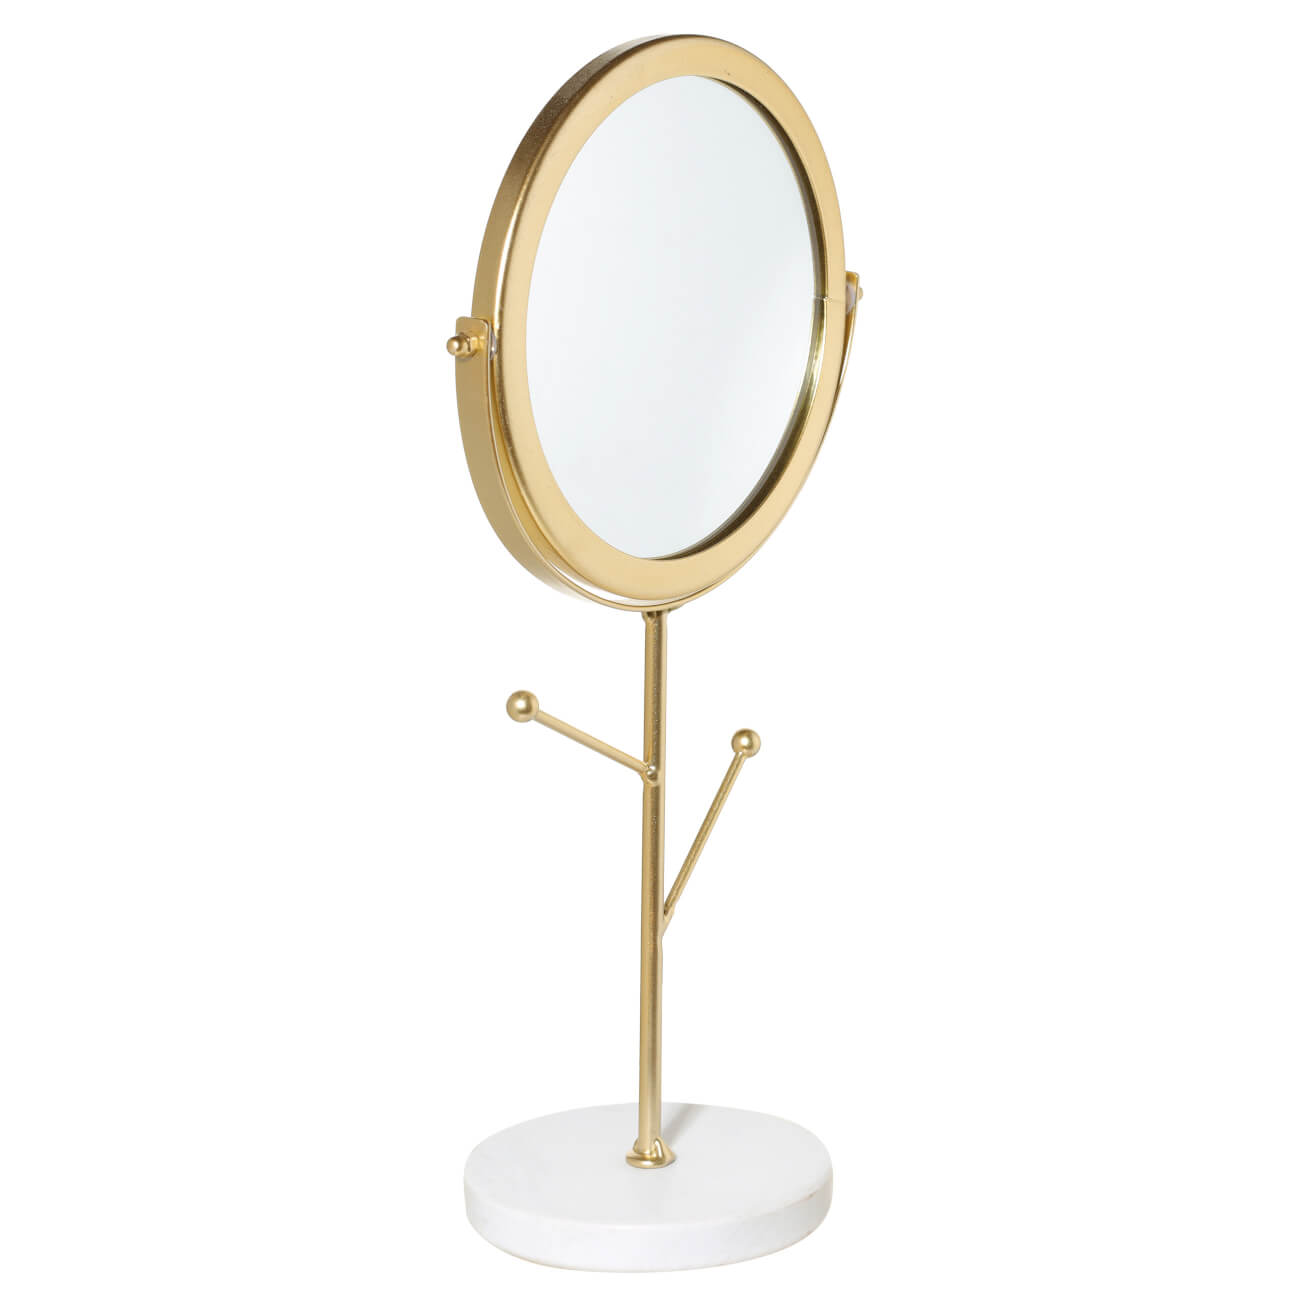 Зеркало настольное, 30 см, на ножке, с держателями для украшений, металл, золотистое, Maniera зеркало настольное 17 см двустороннее на ножке металл круглое fantastic